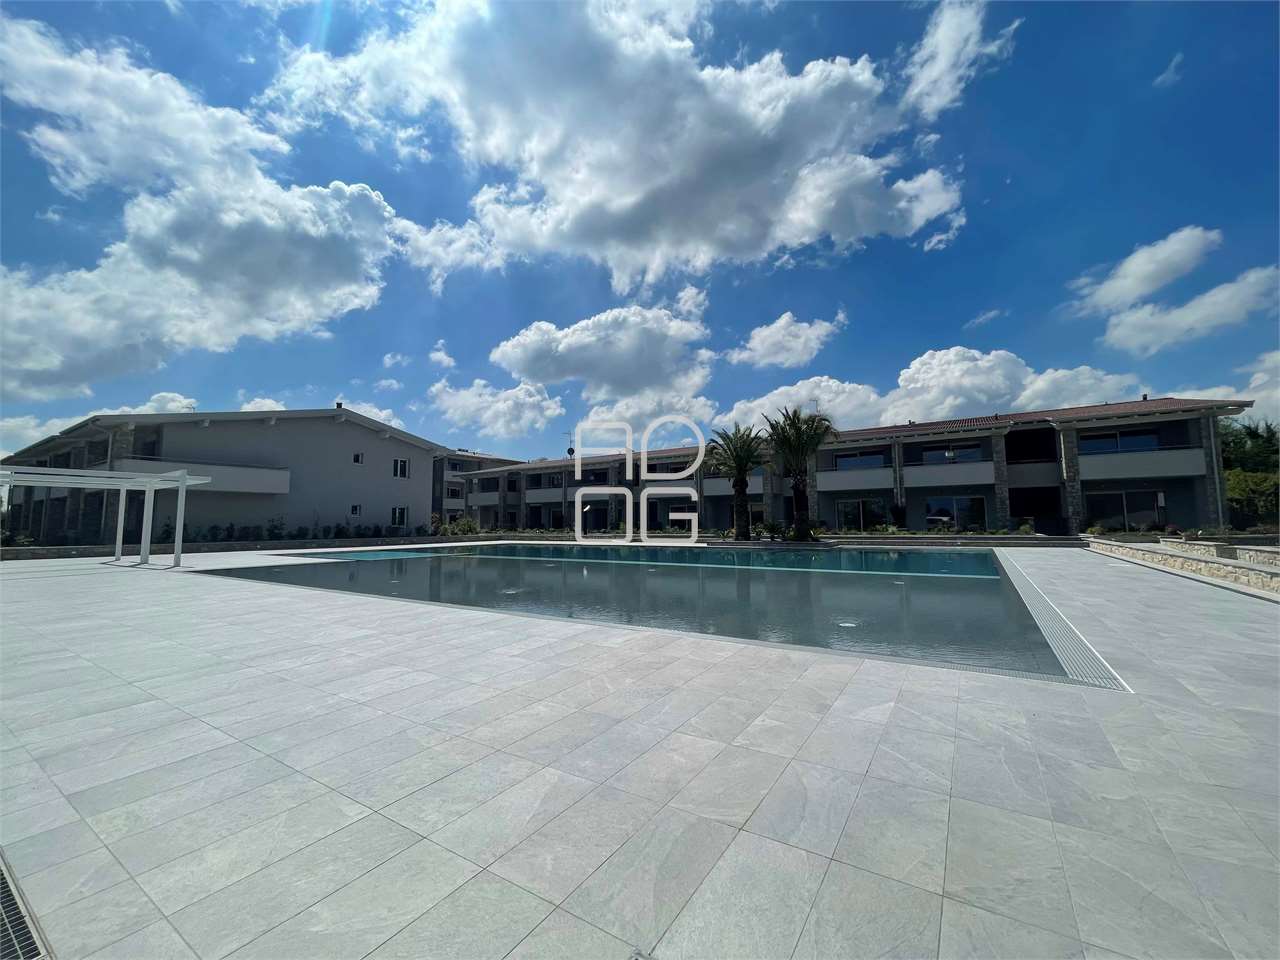 Nuovissimo residence con piscina in classe A a Desenzano del Garda